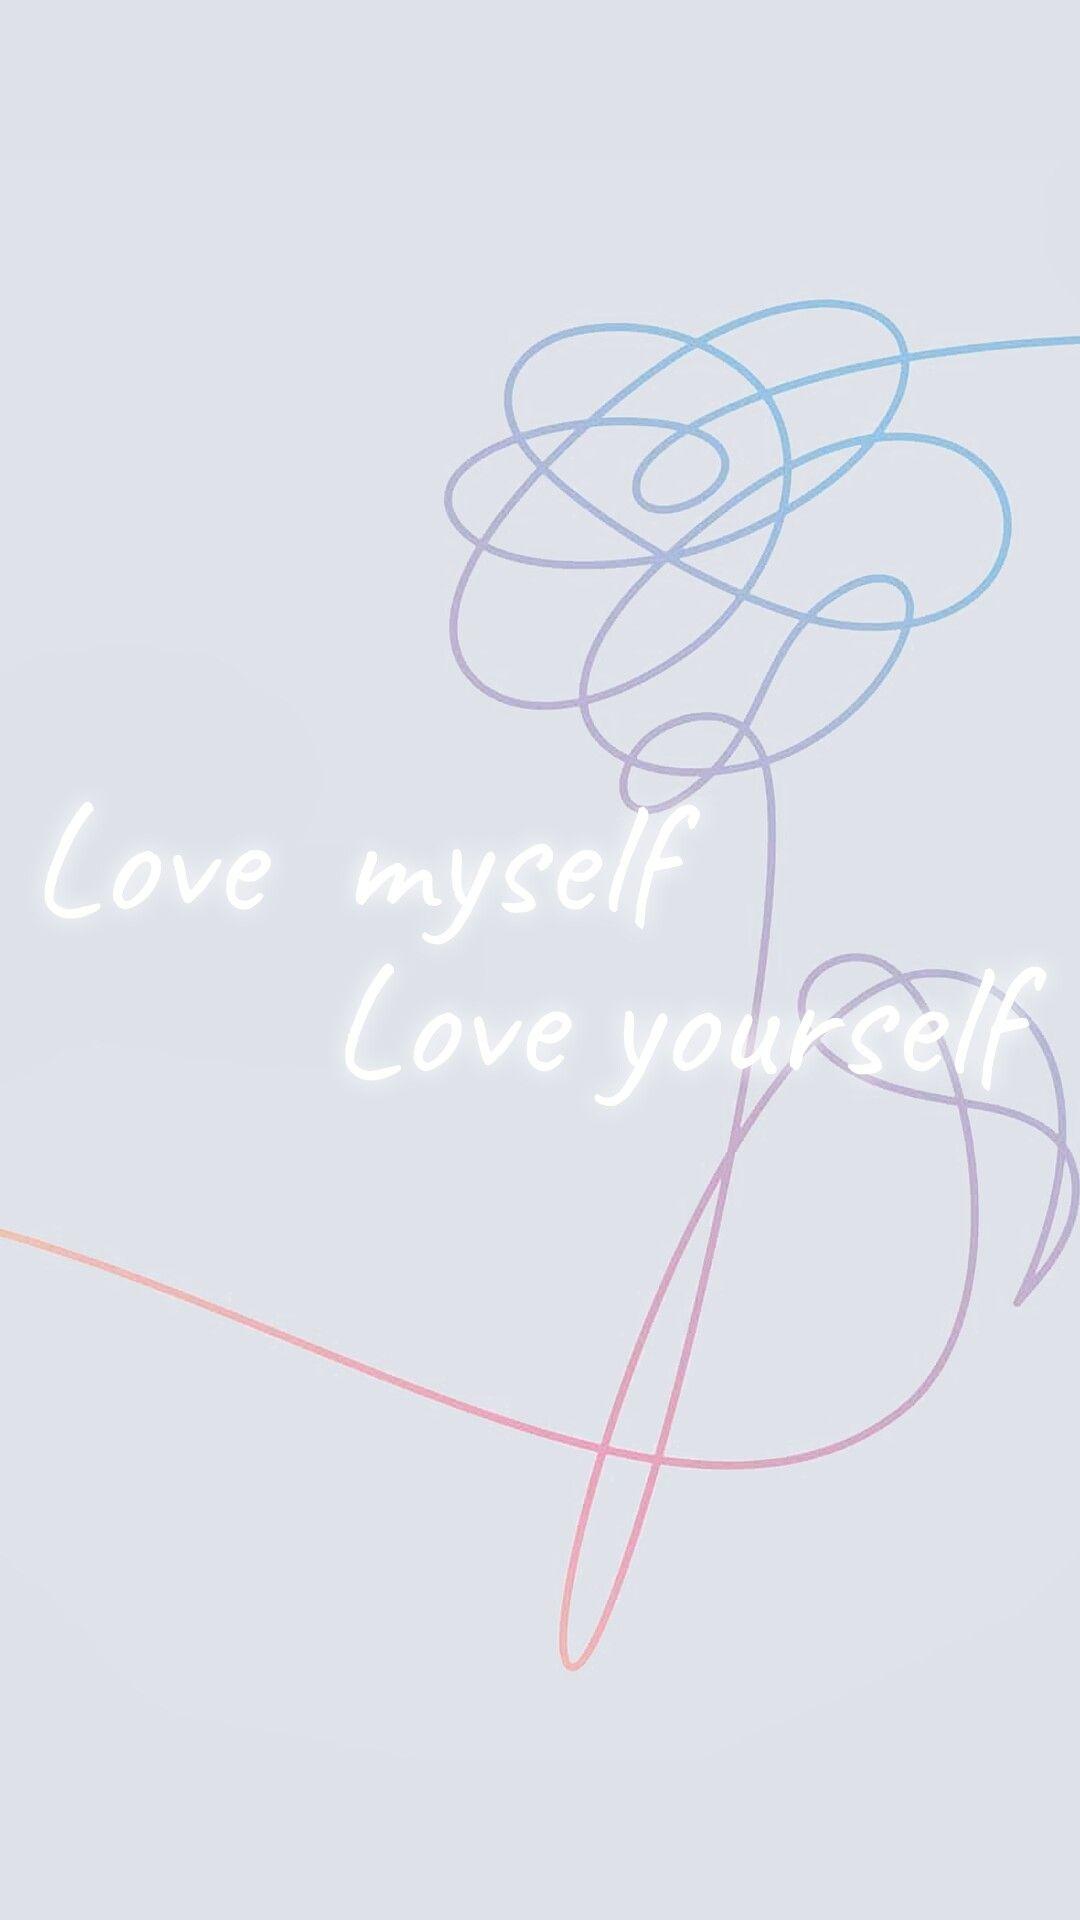 Love Myself. Love Yourself. BTS. Bts wallpaper, Bts background